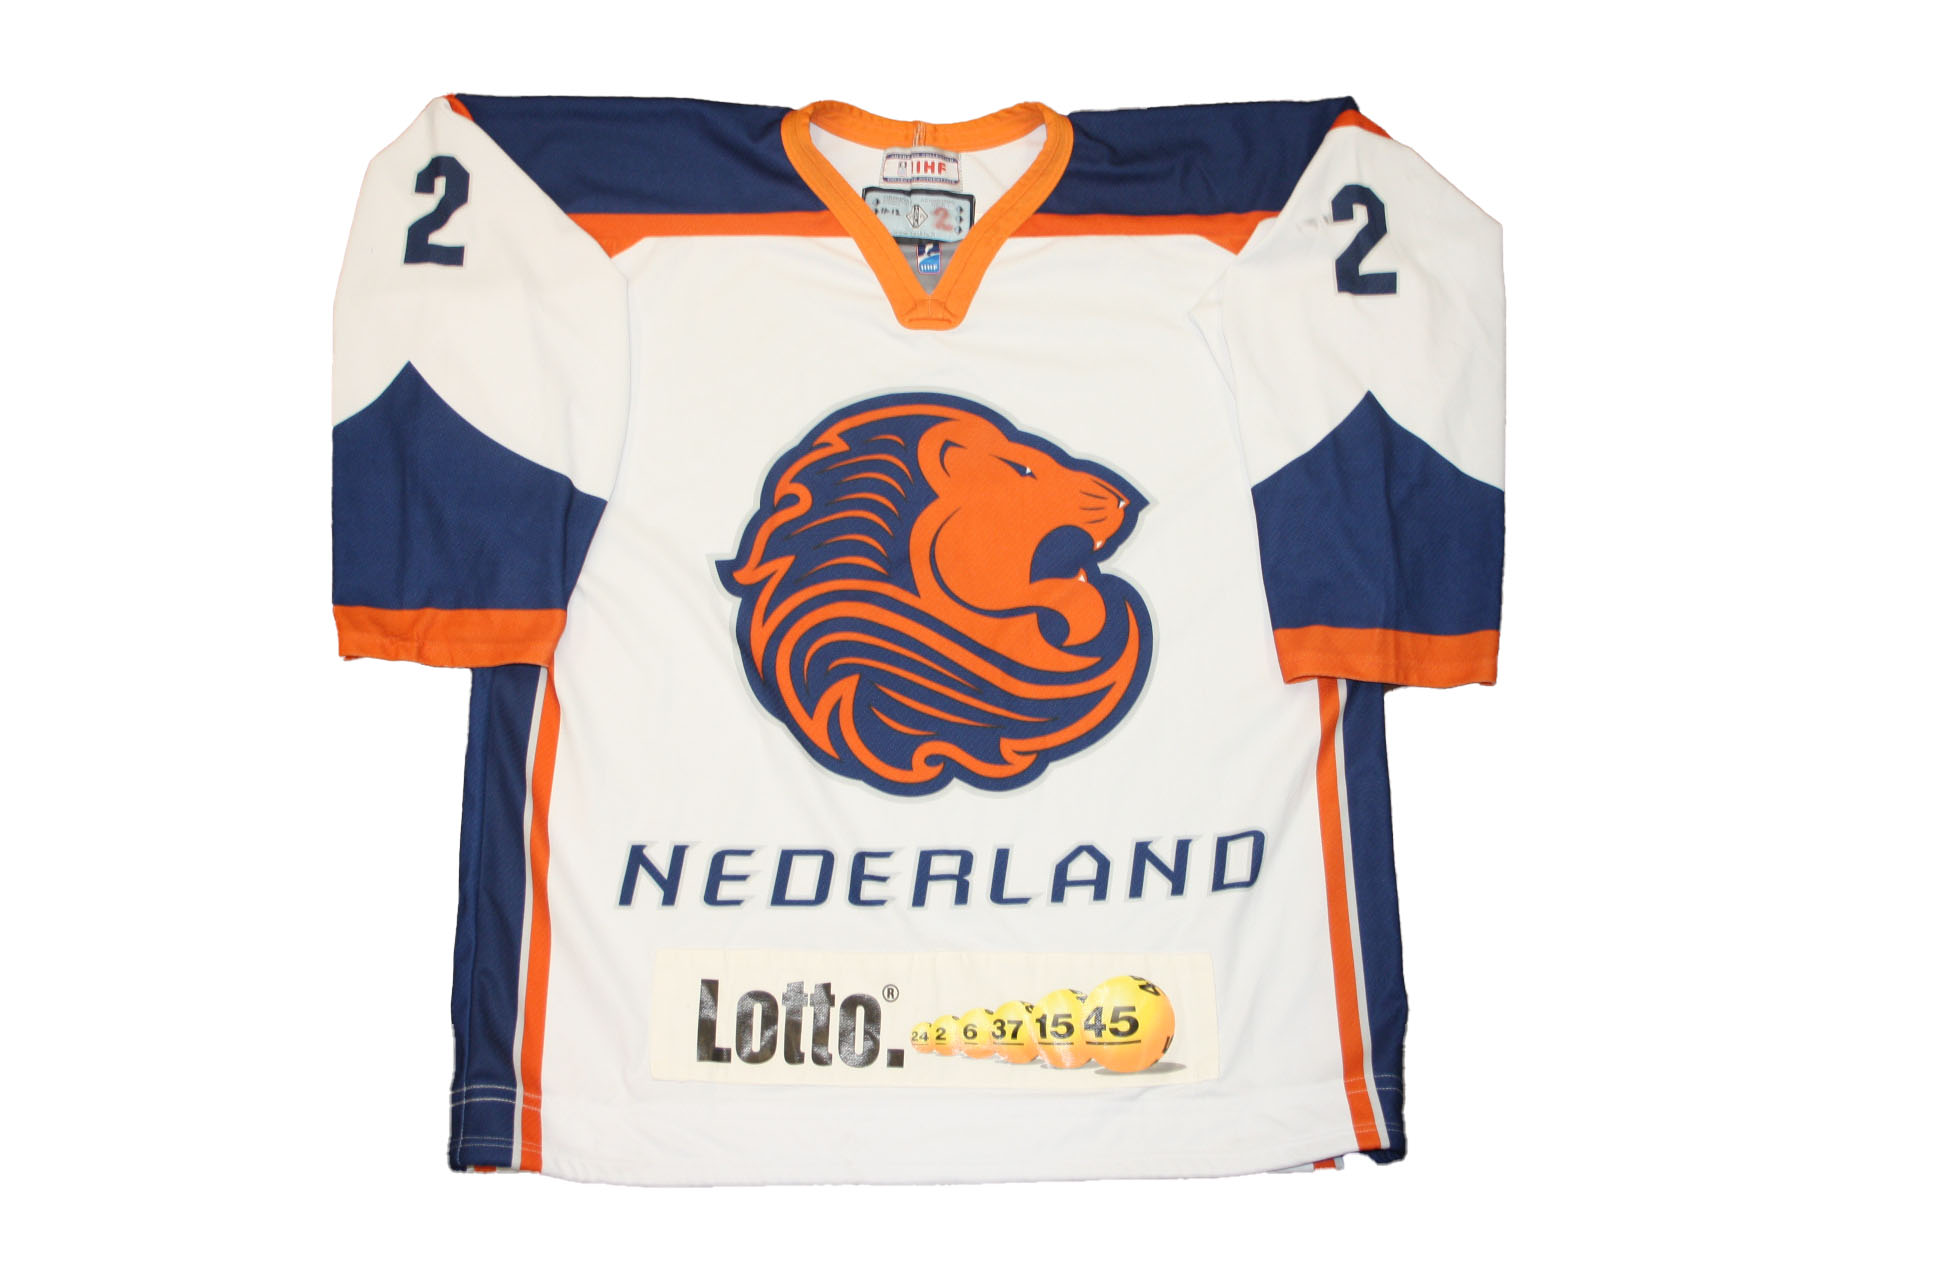 microscoop Op te slaan Autonomie Nederlands team wedstrijdshirt #2 - Shop van IJshockey Nederland